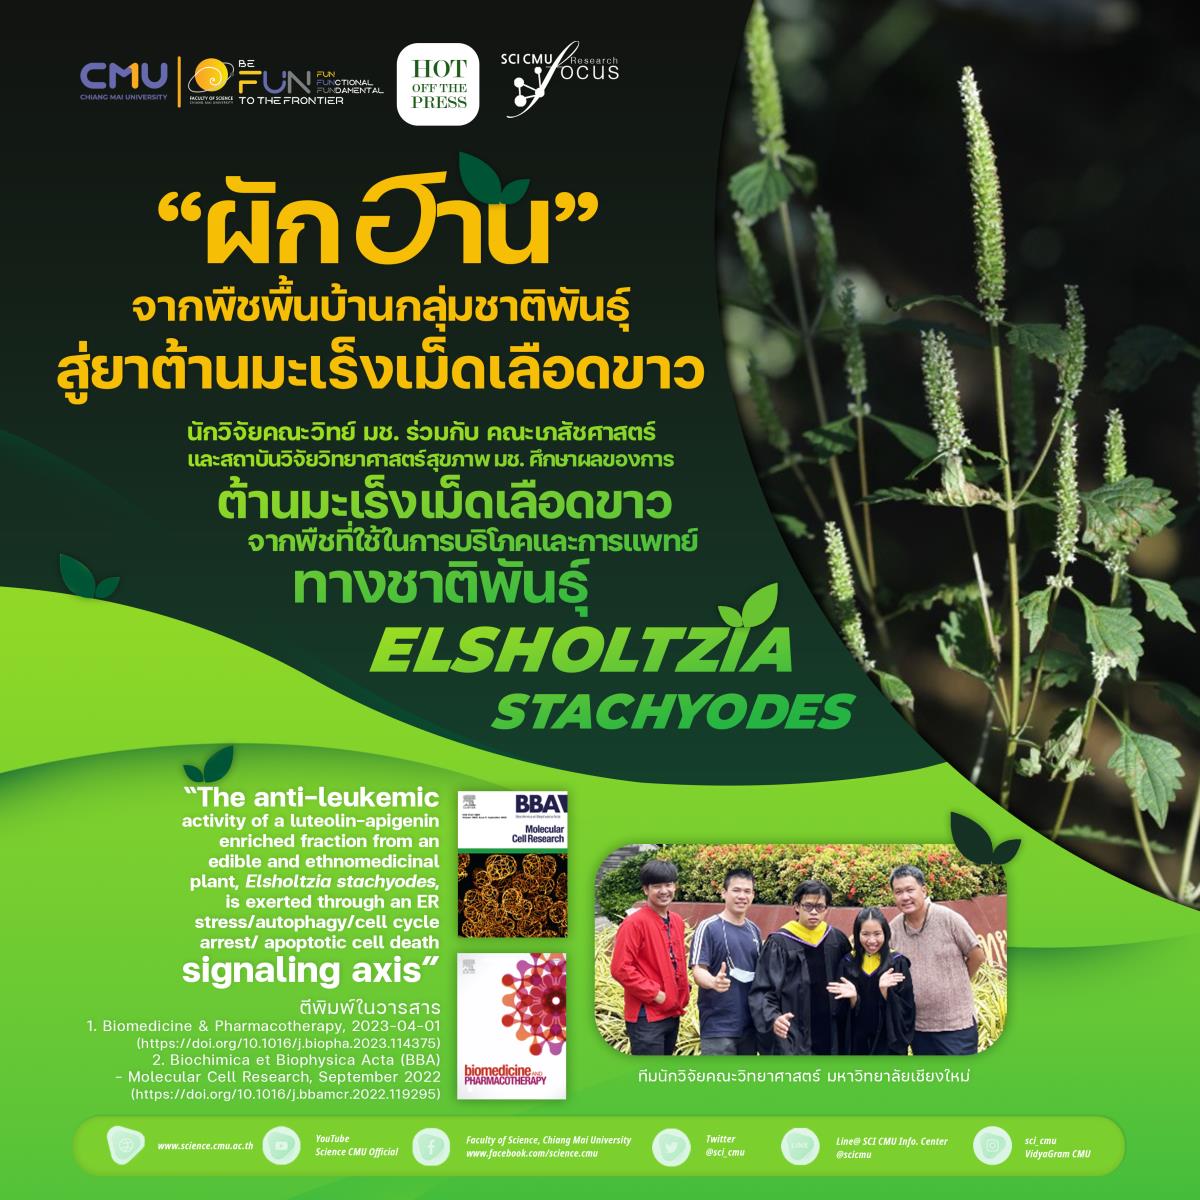 นักวิจัย มช. ชู “ผักฮาน” พืชท้องถิ่นไทย ต้านมะเร็งเม็ดเลือดขาว เพิ่มโอกาสทางการรักษา